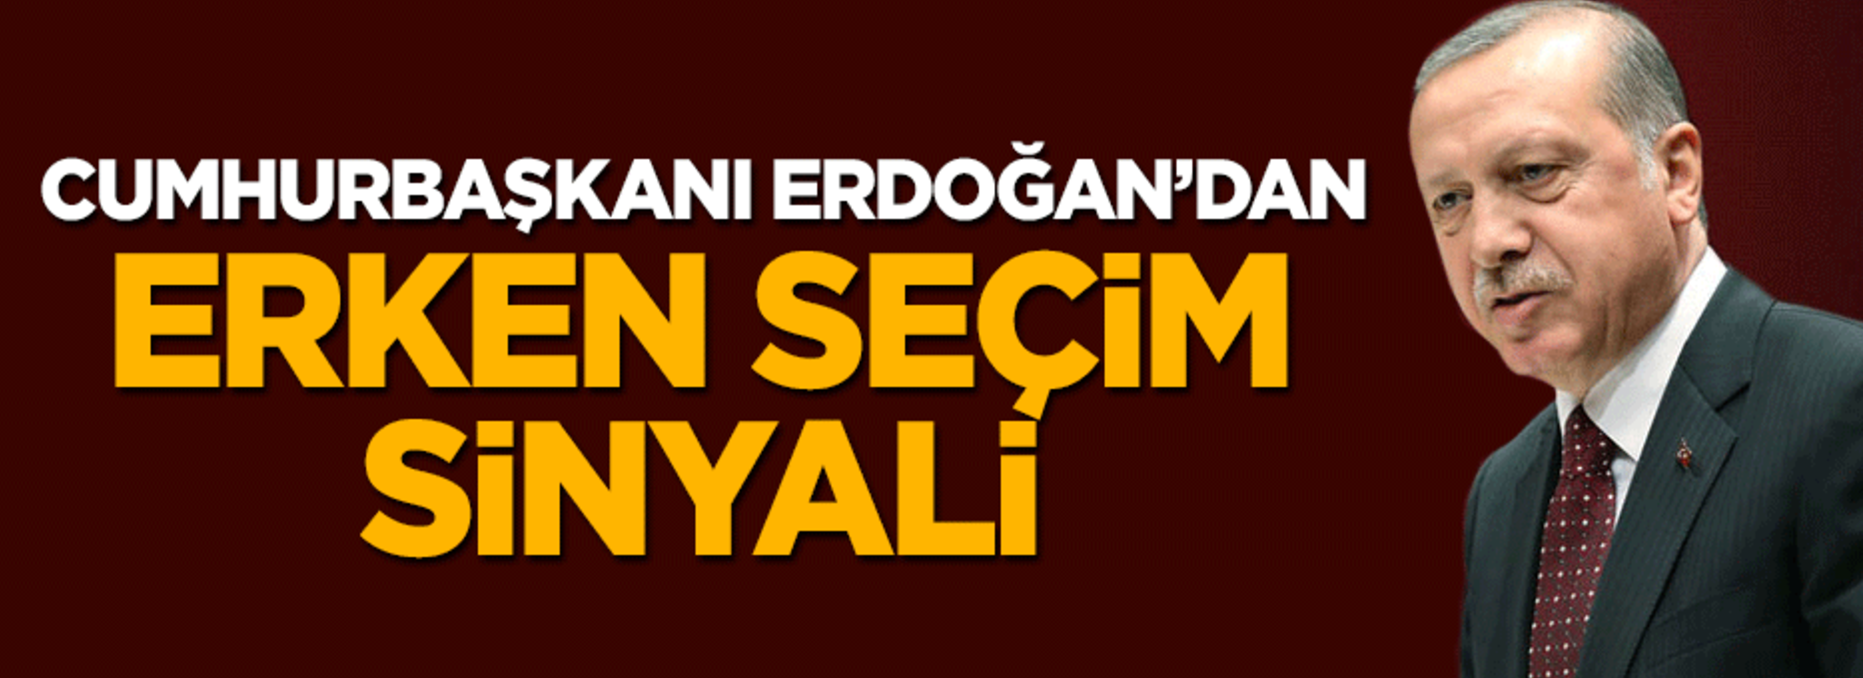 Cumhurbaşkanı Erdoğan'dan erken seçim sinyali!..